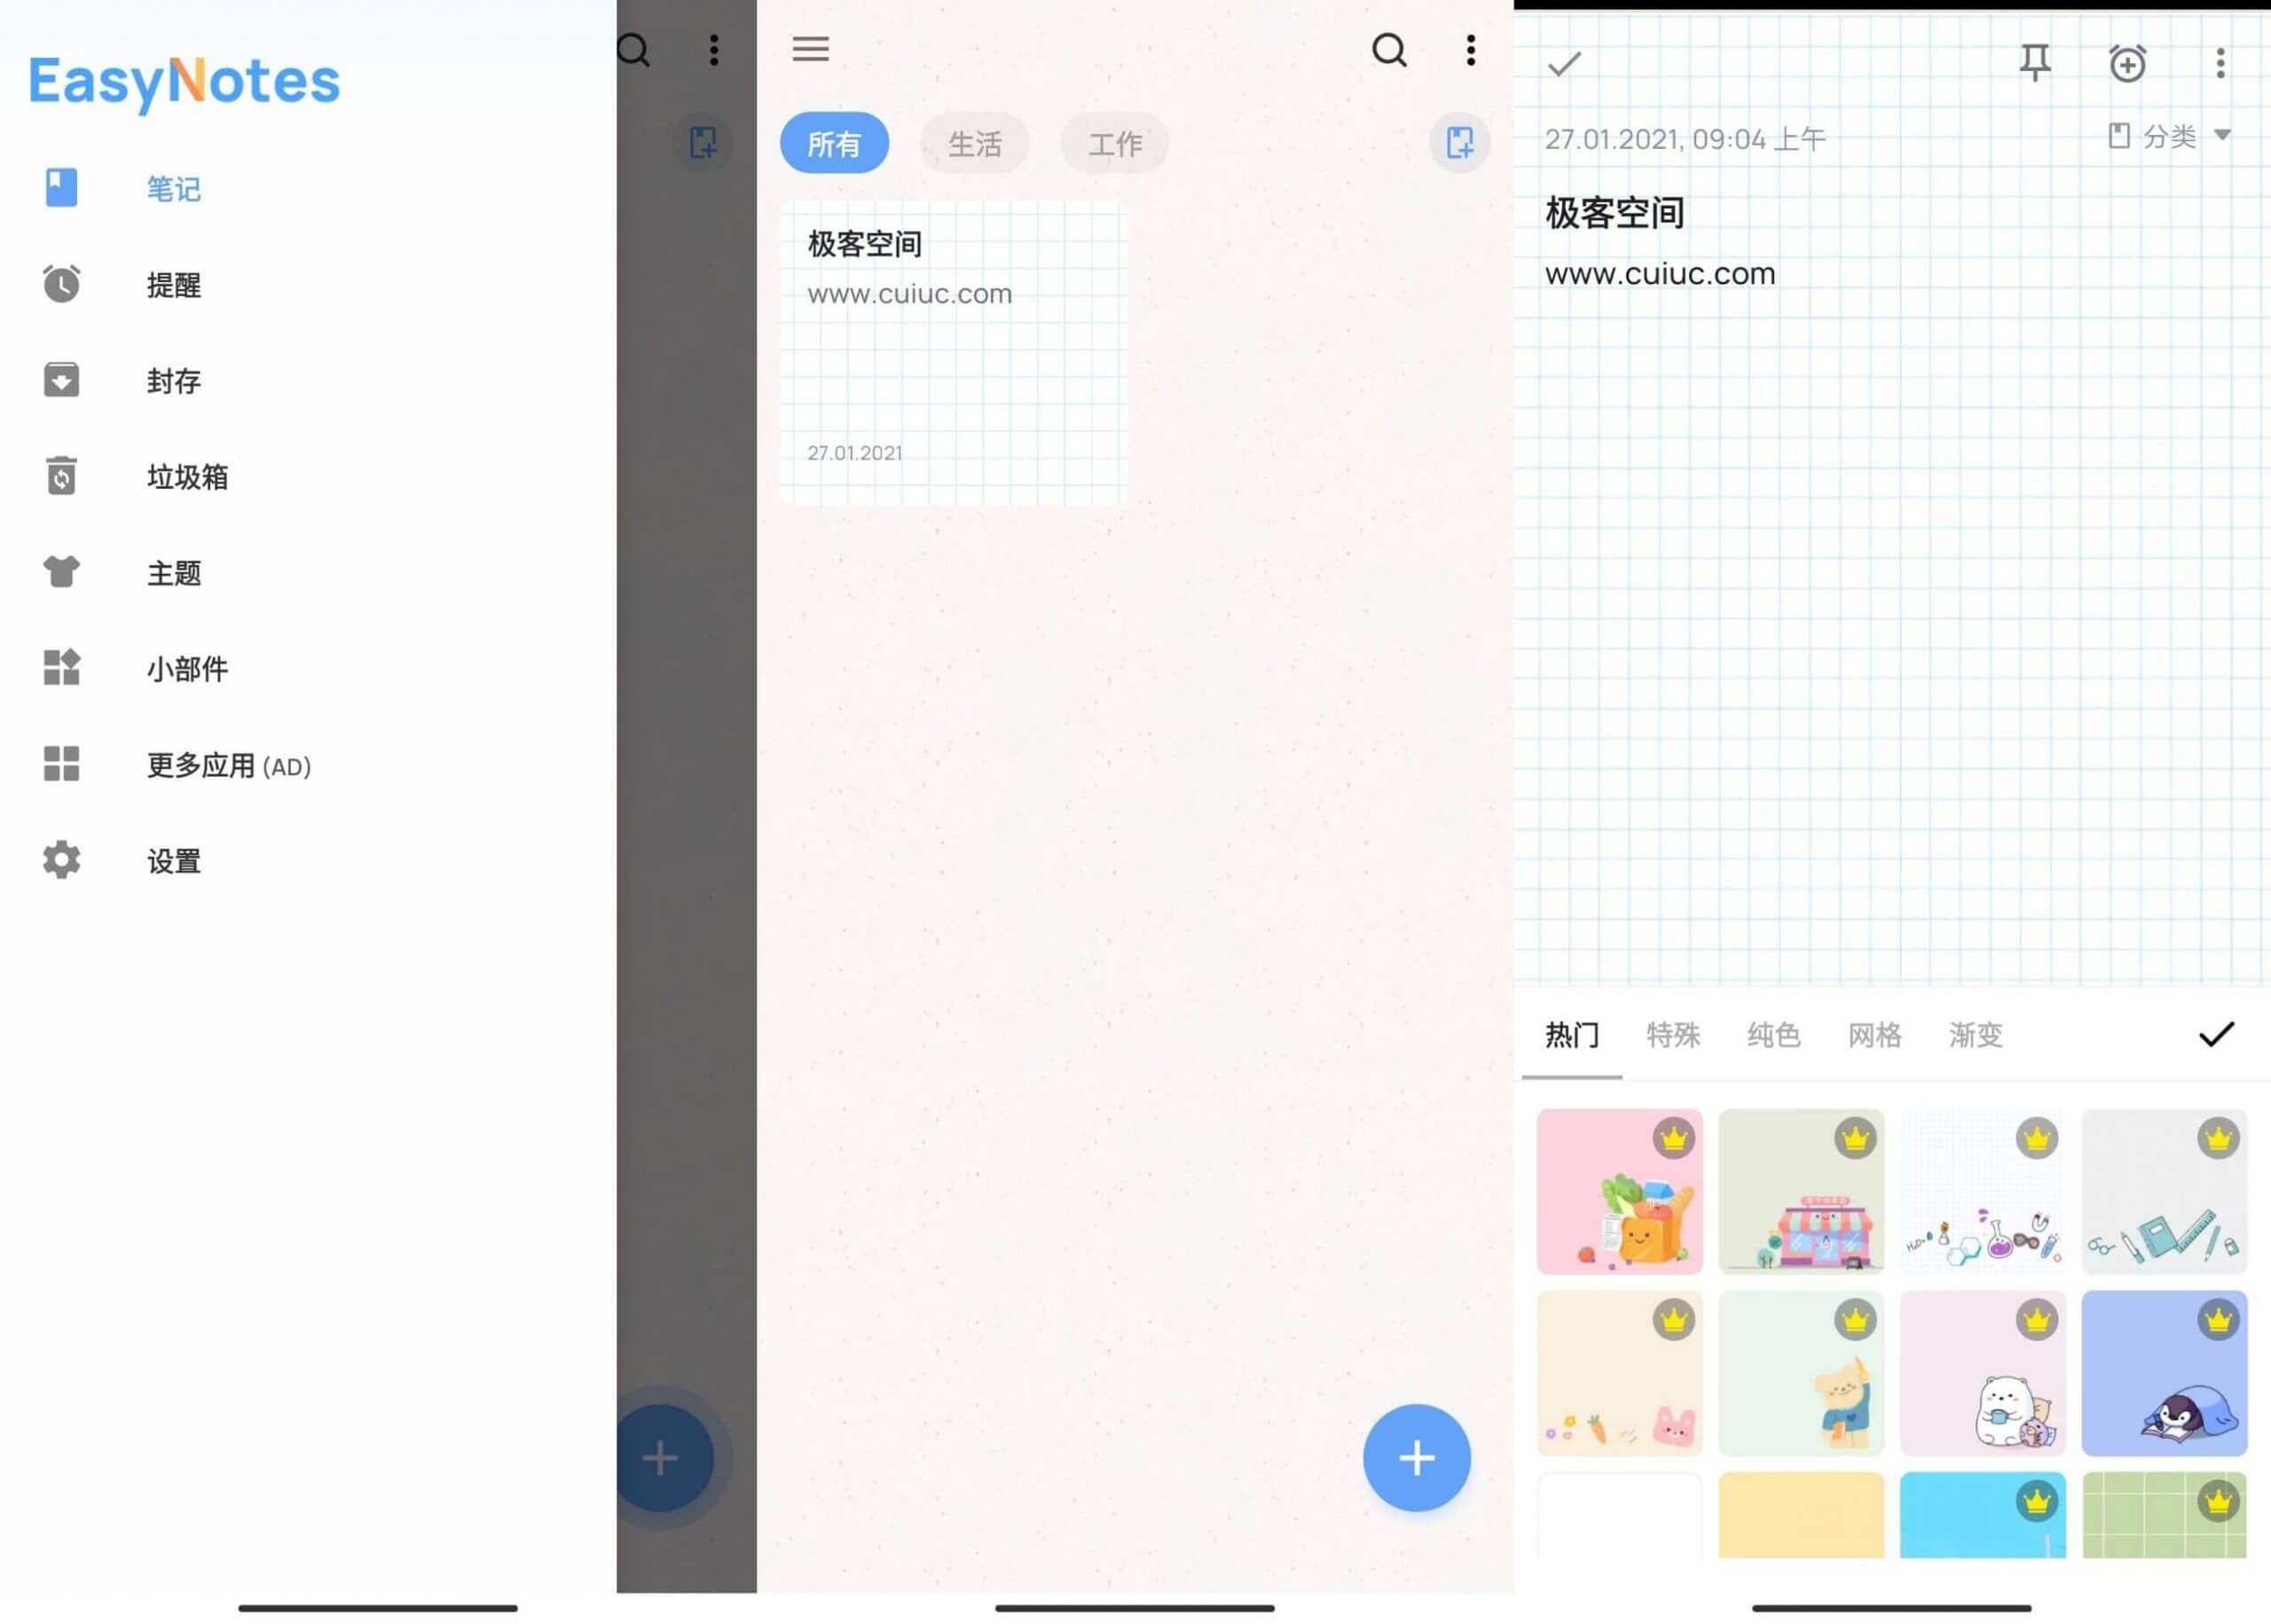 彩色日记 EasyNotes v1.0.33 中文无广告版 日记记录软件